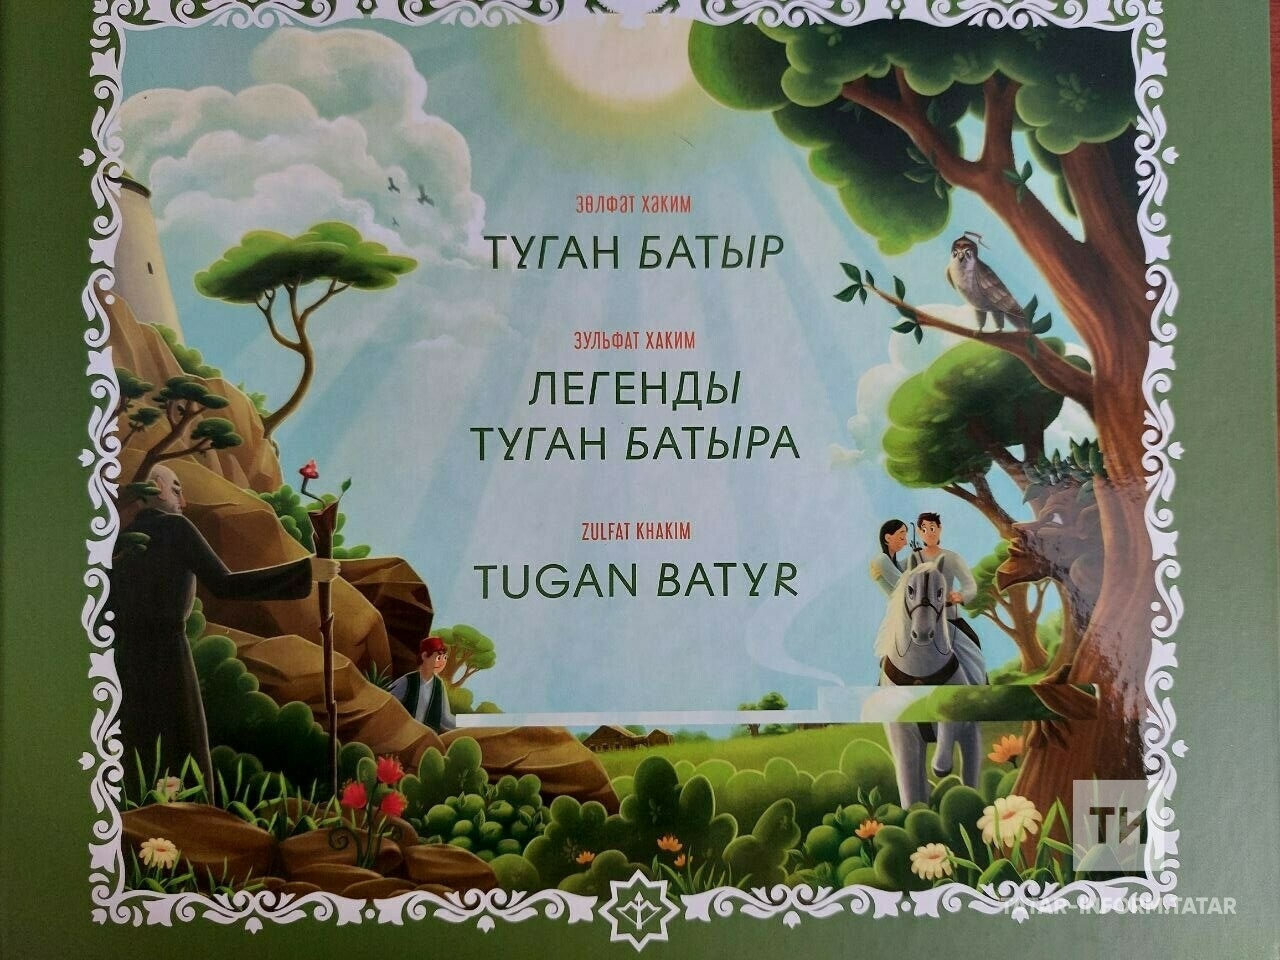 «Проект объединяет»: в Нацбиблиотеке представили нового сказочного героя «Туган батыр»